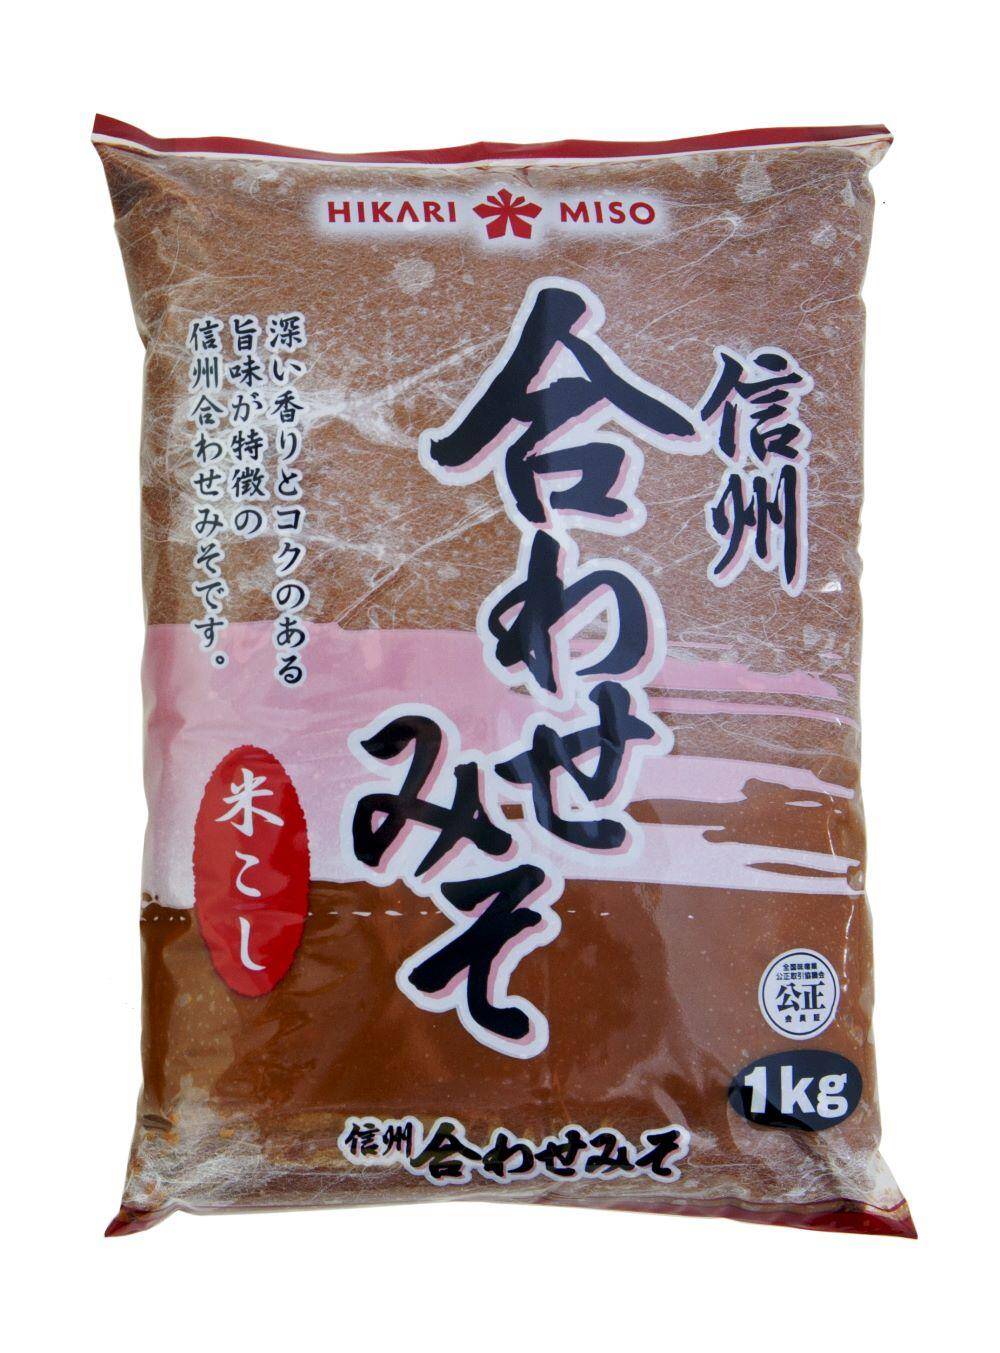 Miso Awase (ciemne) 1kg/10 Hikari